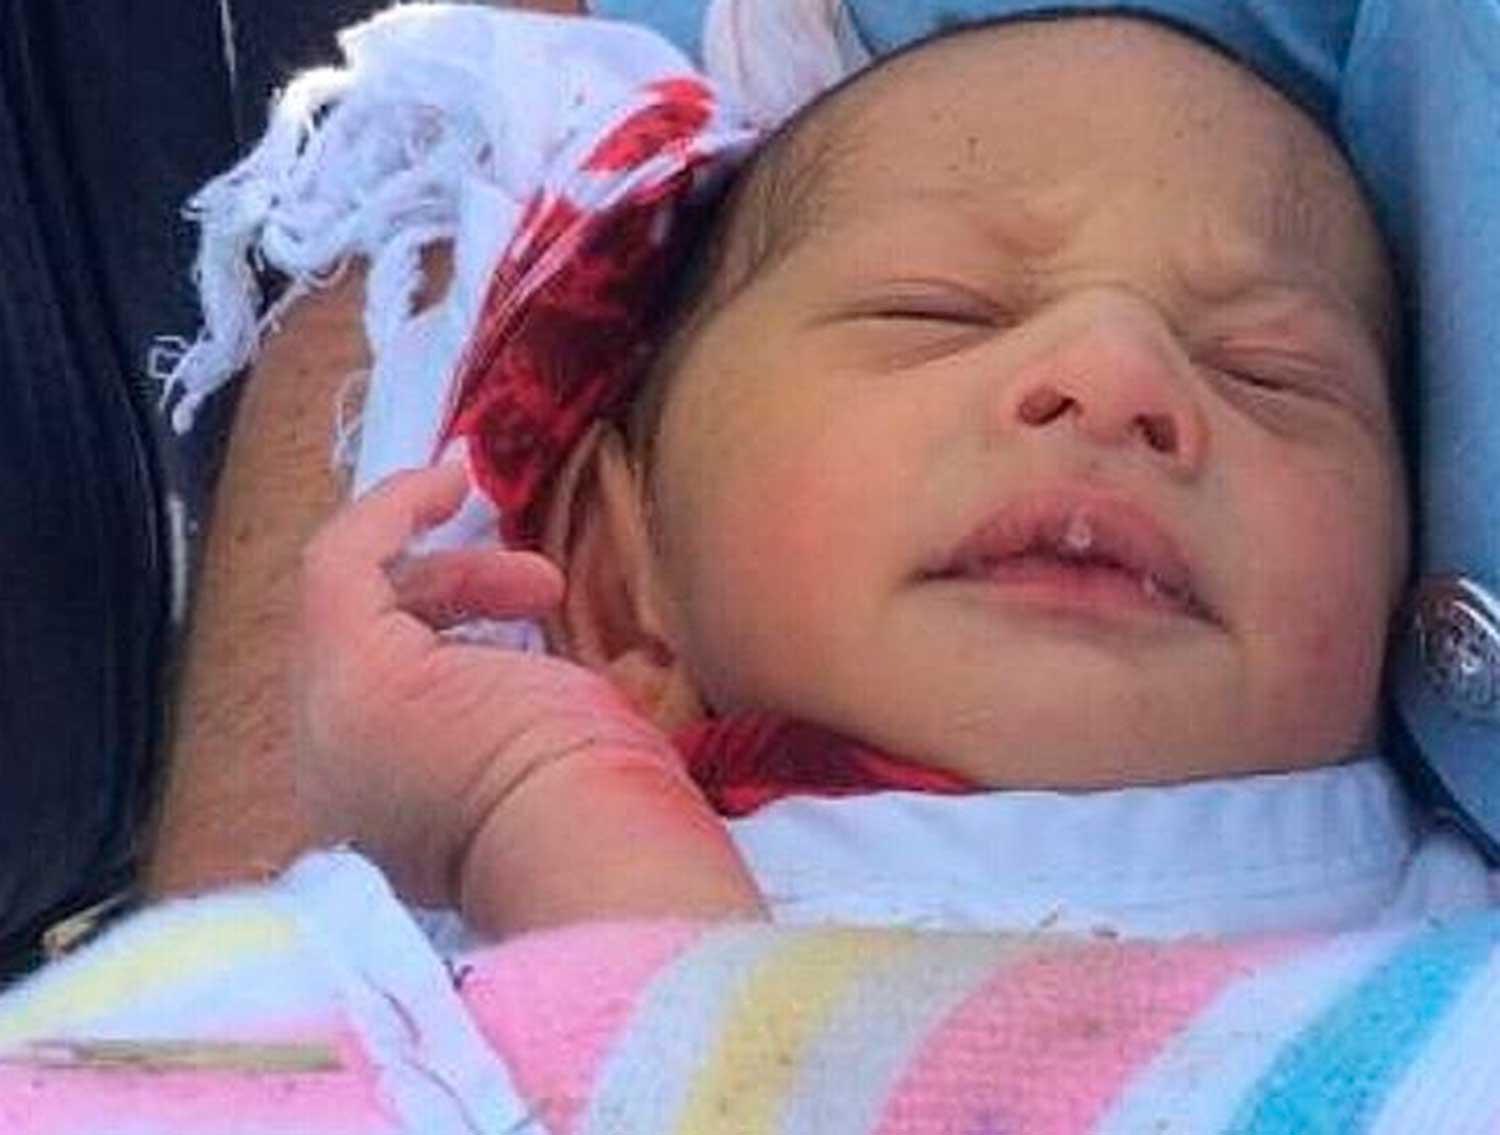 Den nyfödde pojken tros vara bara ett par dagar gammal och låg inlindad i en sjukhusfilt i botten av en brunn.